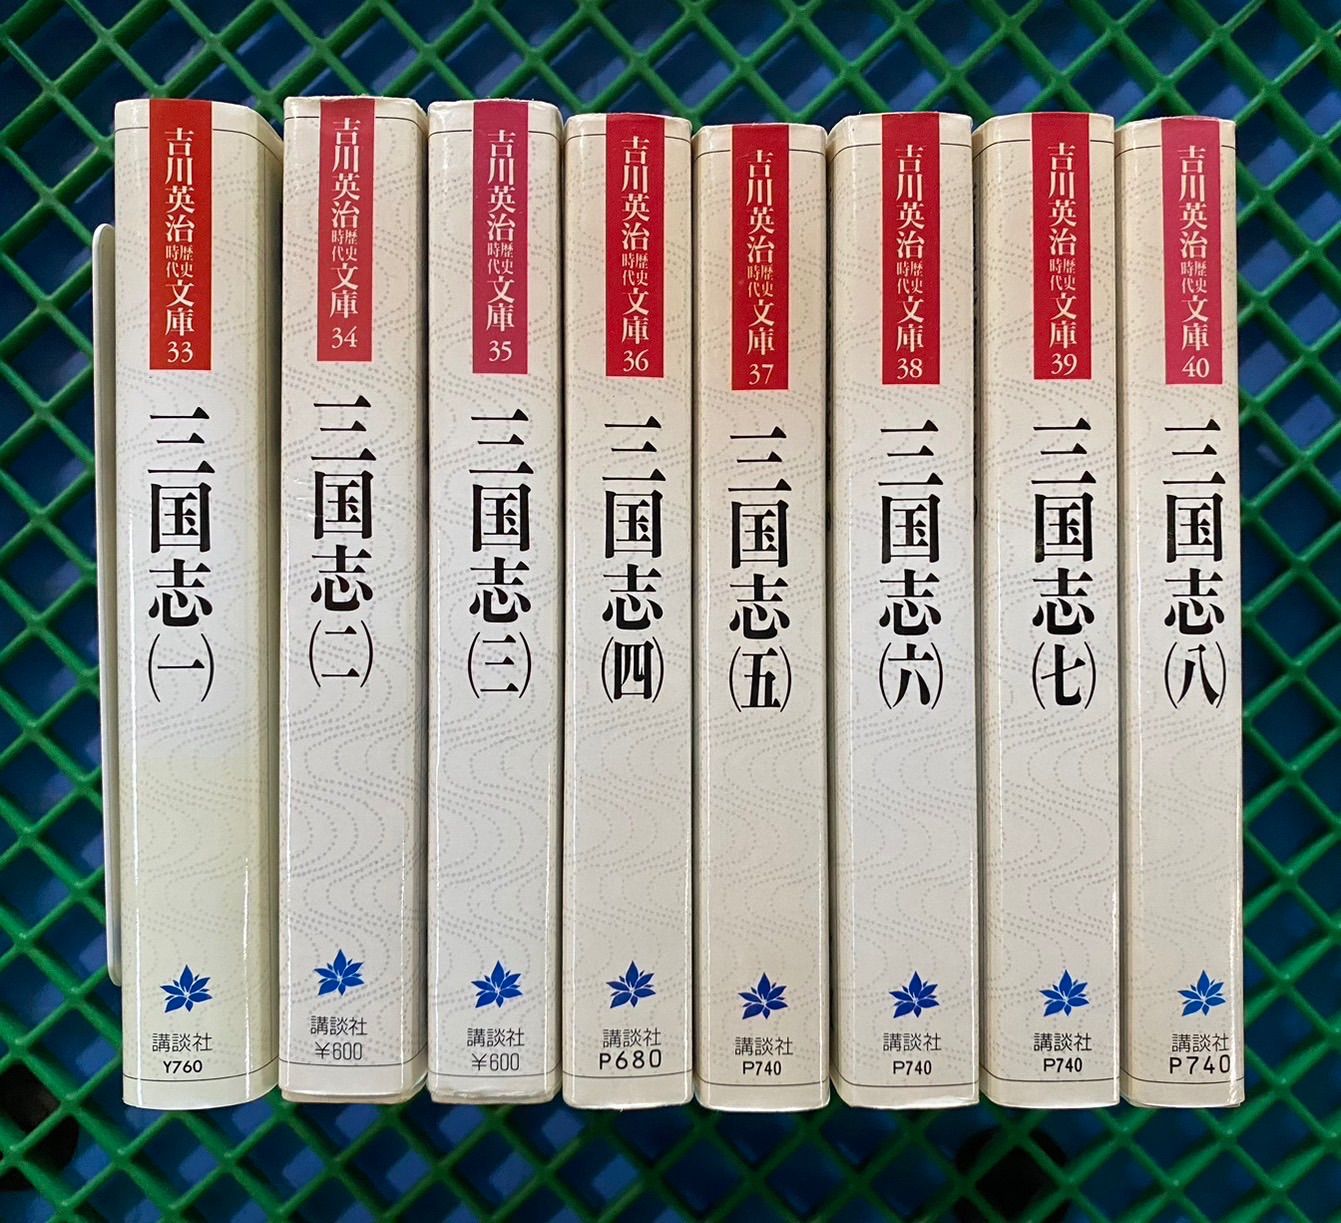 三国志 : 正史 1 〜8巻 全巻セット - 文学/小説